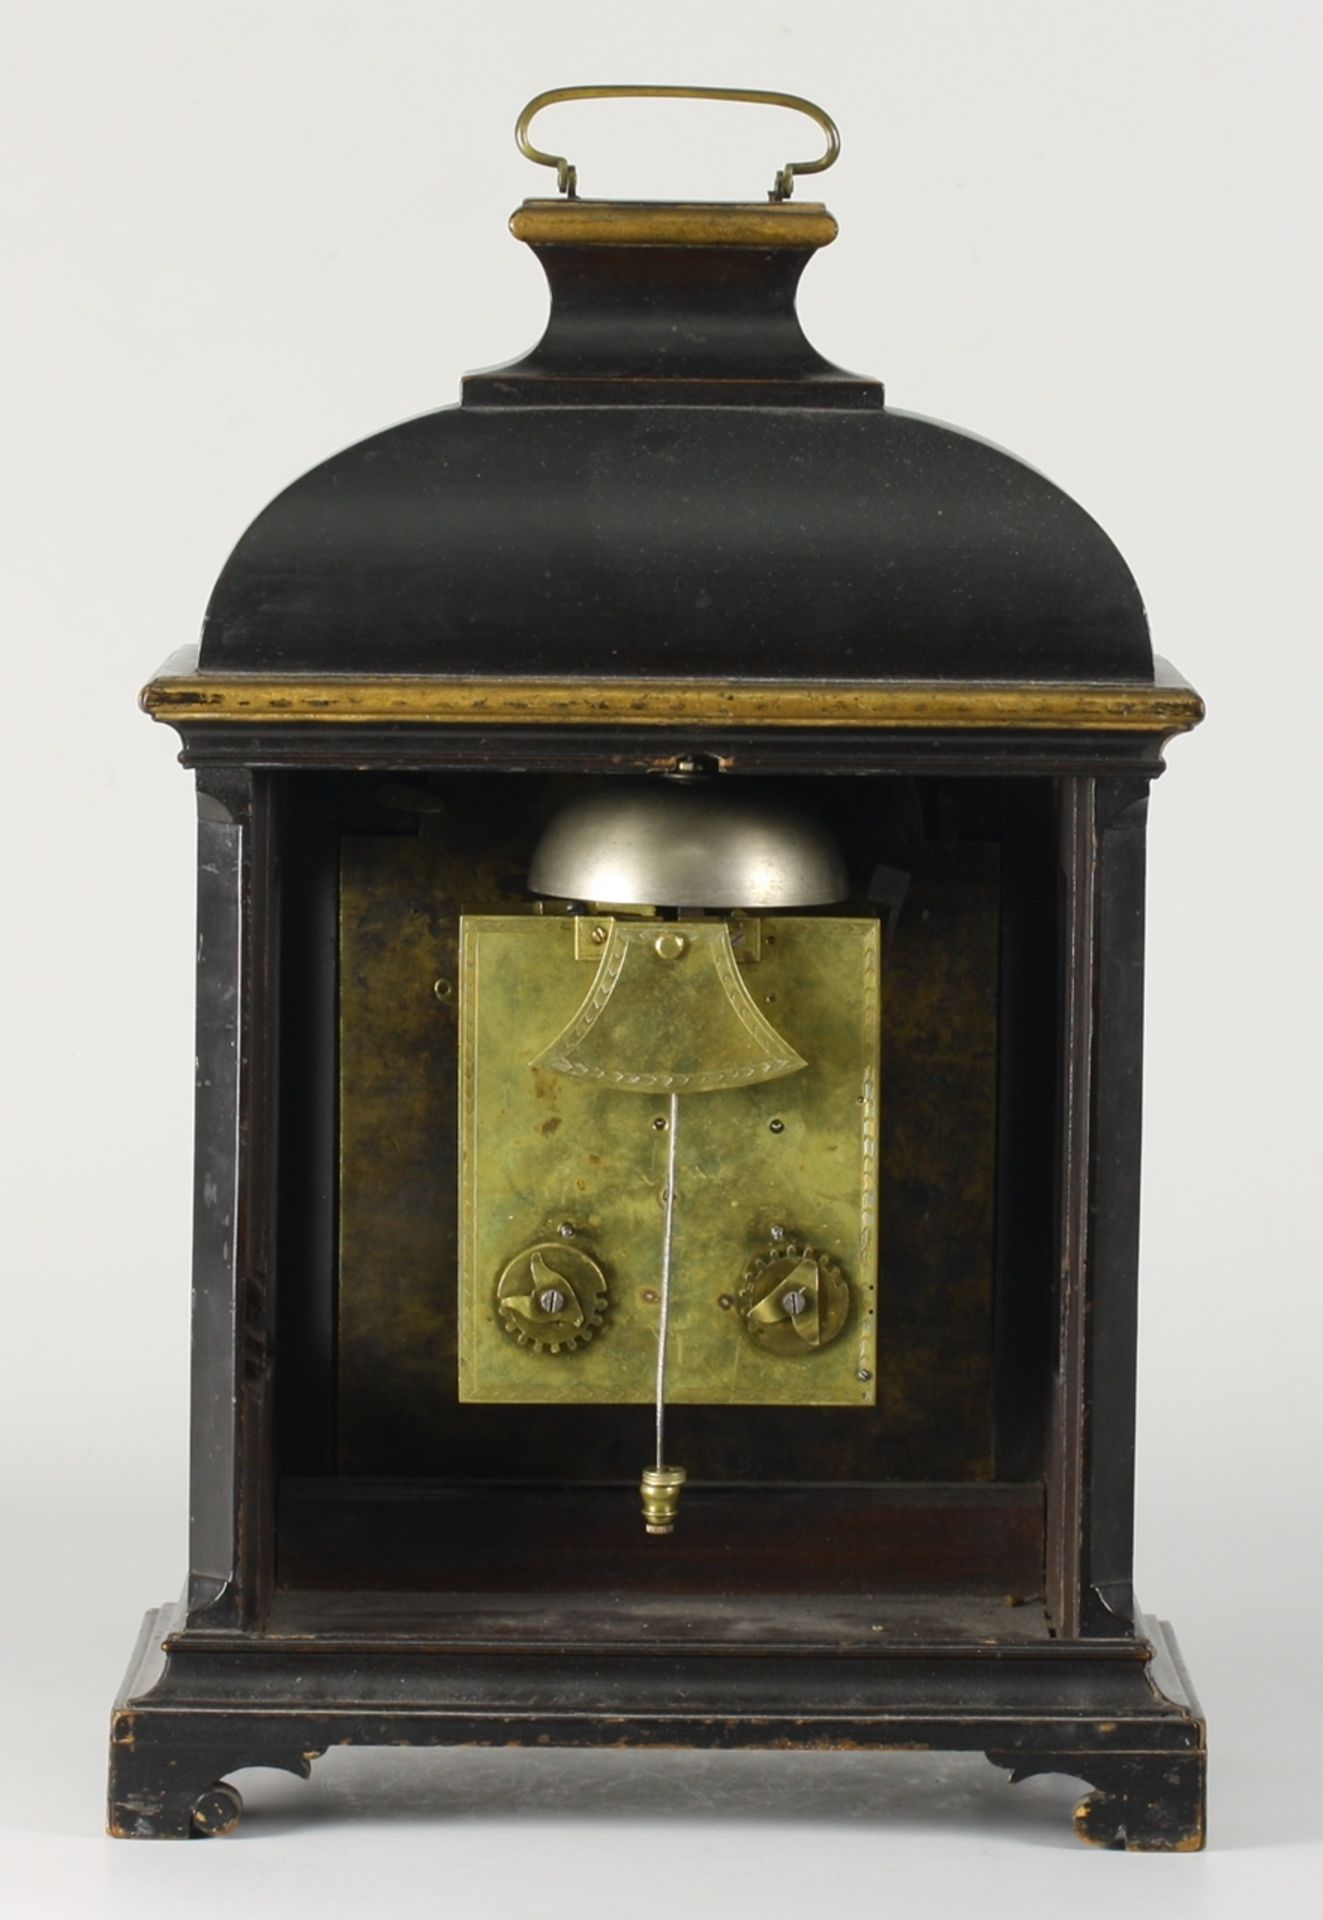 Barocke StockuhrHölzernes, schwarz u. golden gefasstes, verglastes Gehäuse. Scharnierte Tü - Bild 5 aus 8